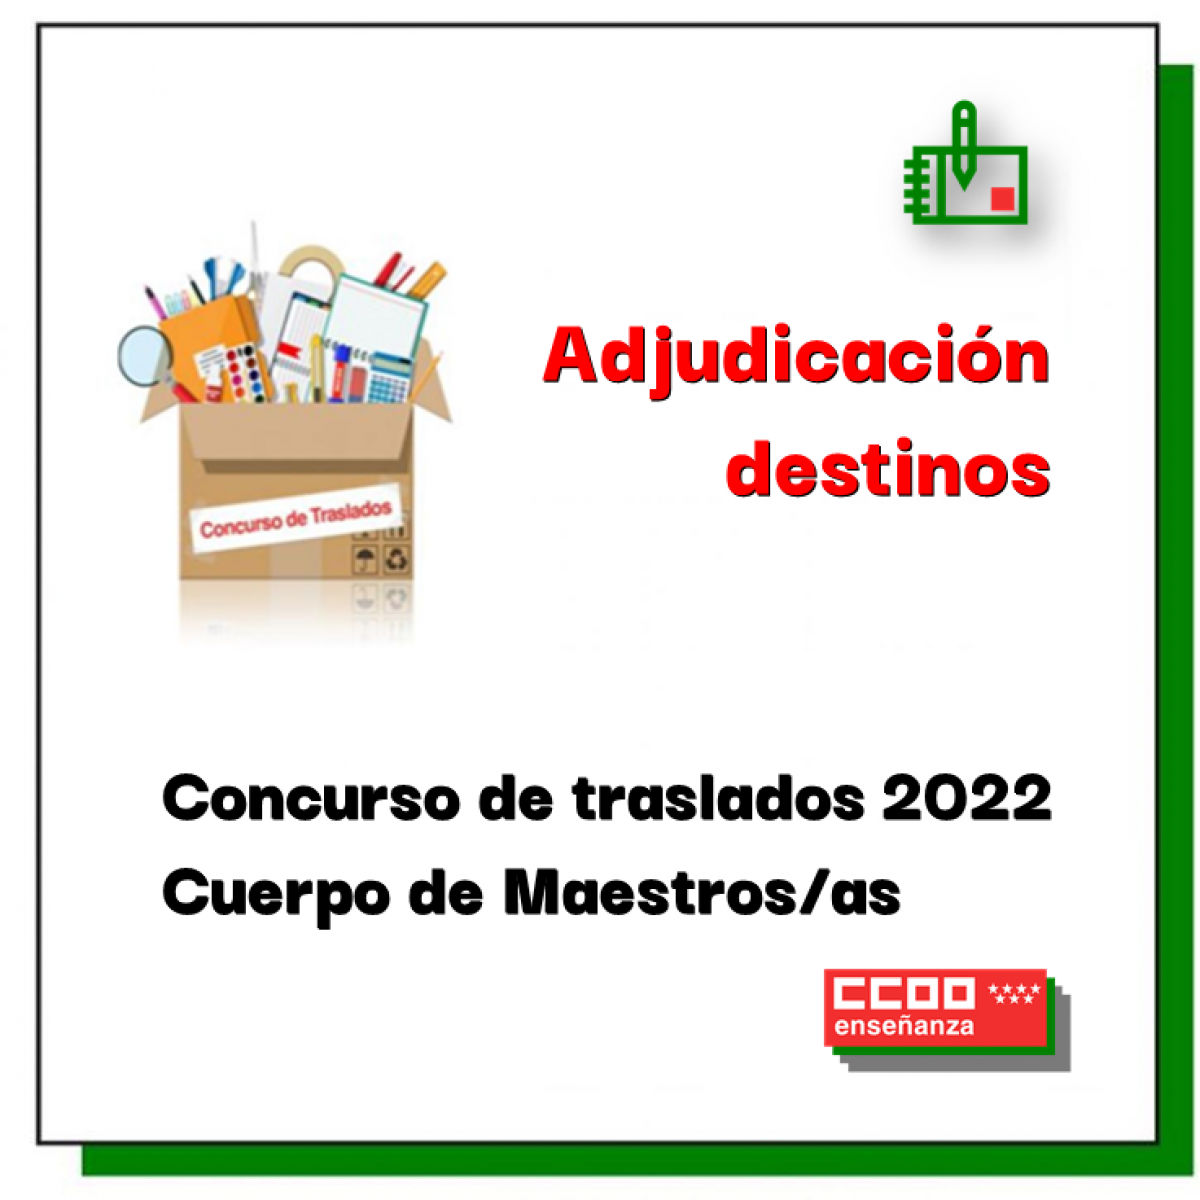 Concurso de traslados 2022: Cuerpo de Maestros/as (adjudicación destinos)